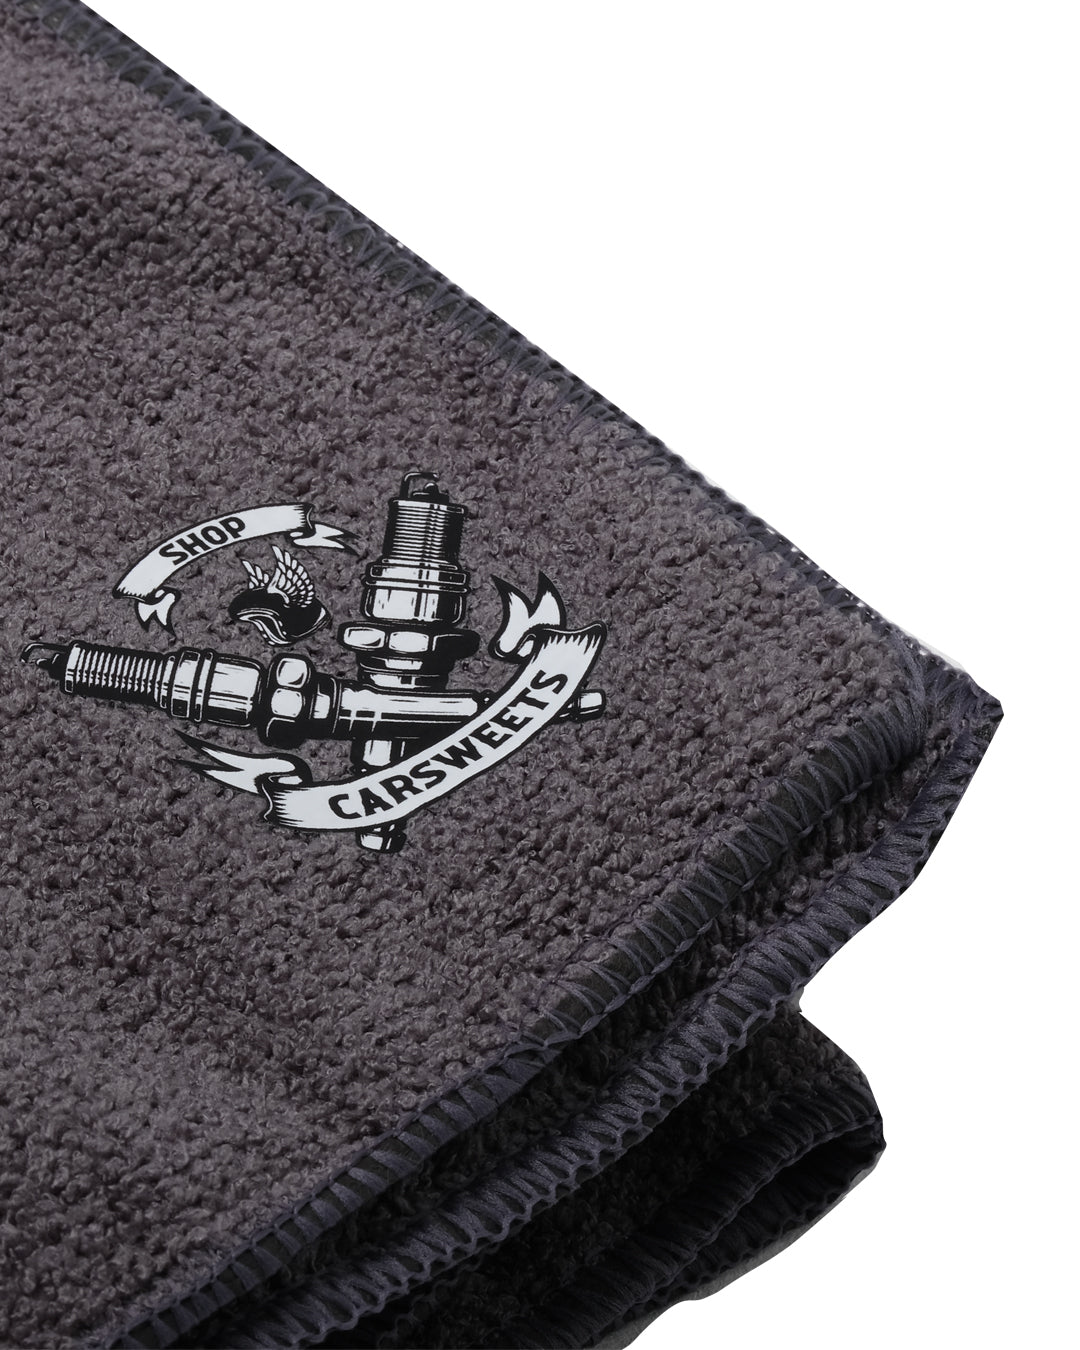 CarSweet Supreme Shine Microfiber Towel (2 pck)